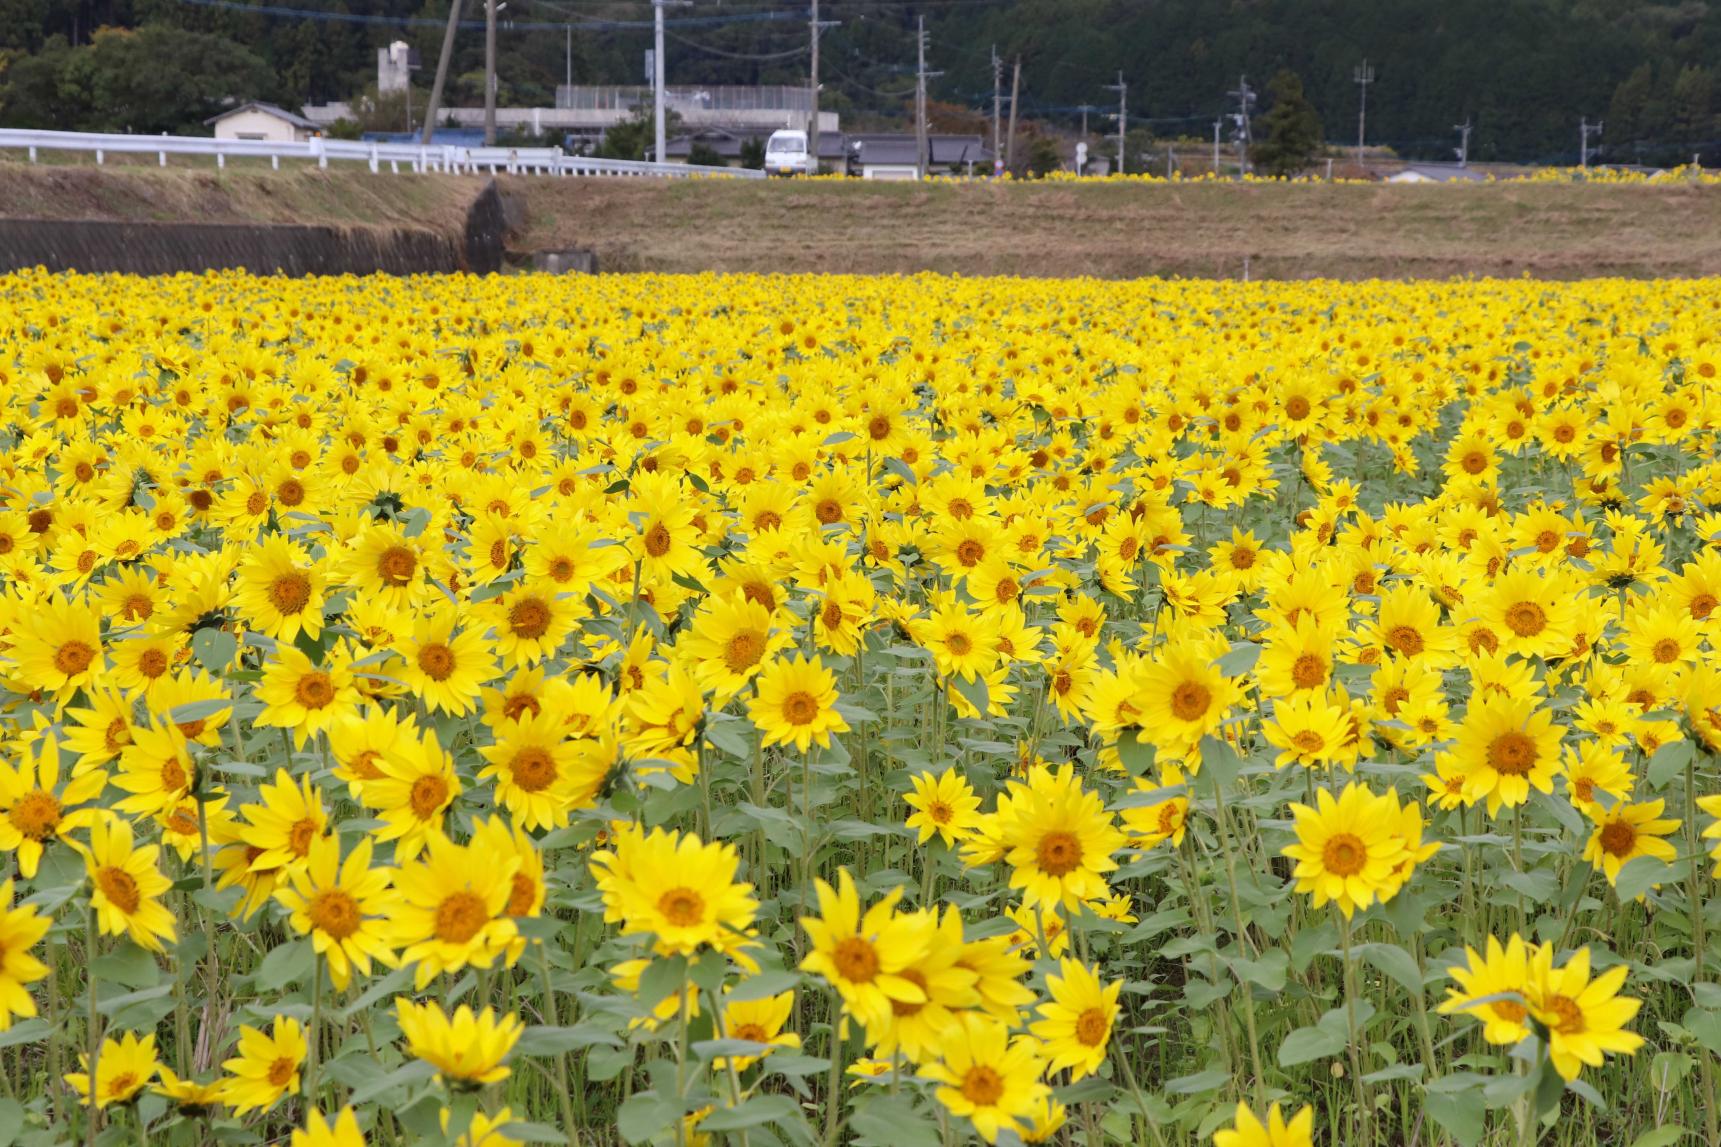 Inamitsu: Sunflower field in autumn